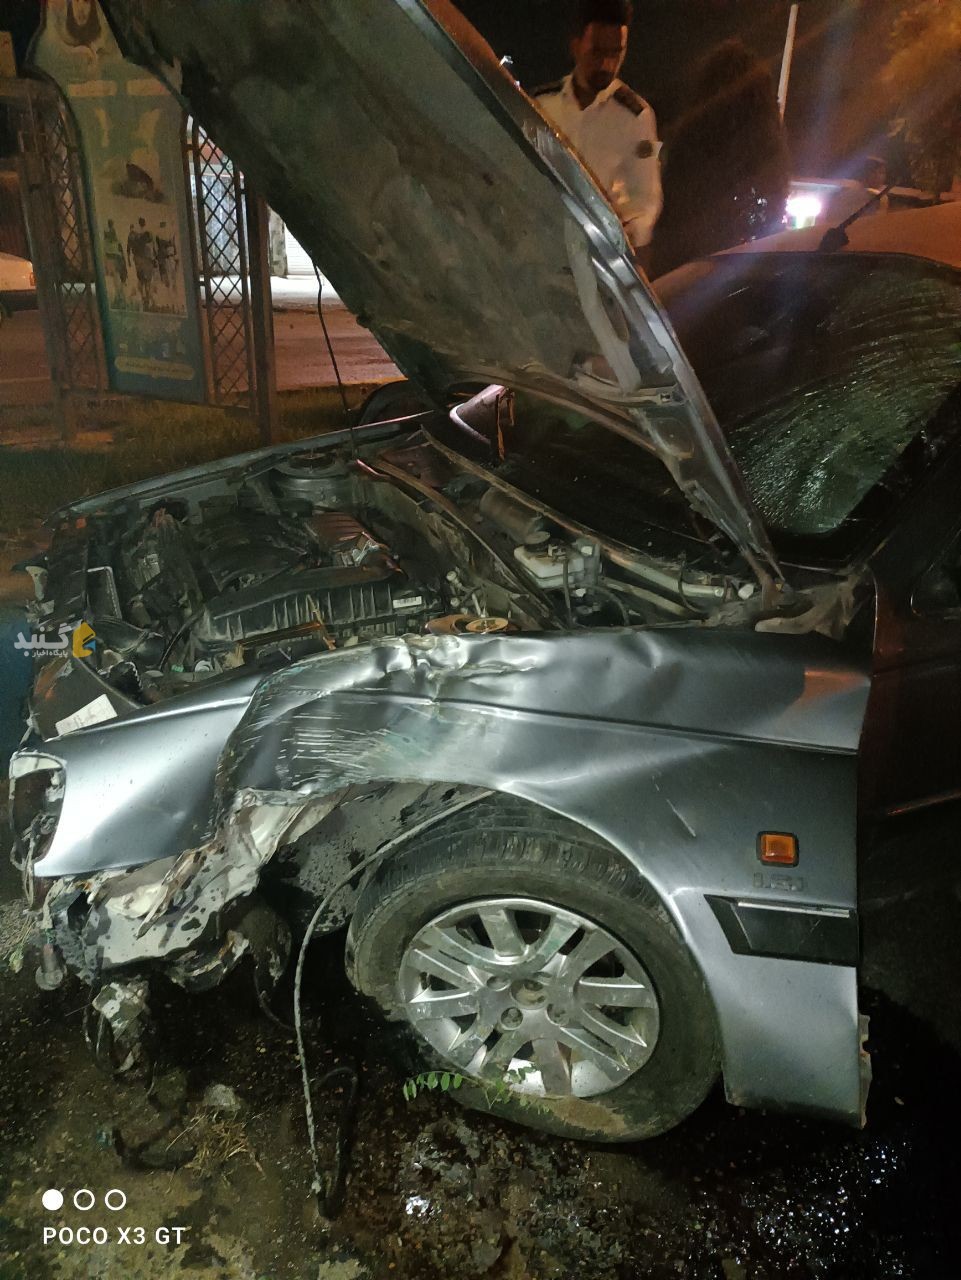 تصاویری از حادثه ورودی شهر گنبدکاووس، روبروی سیلو